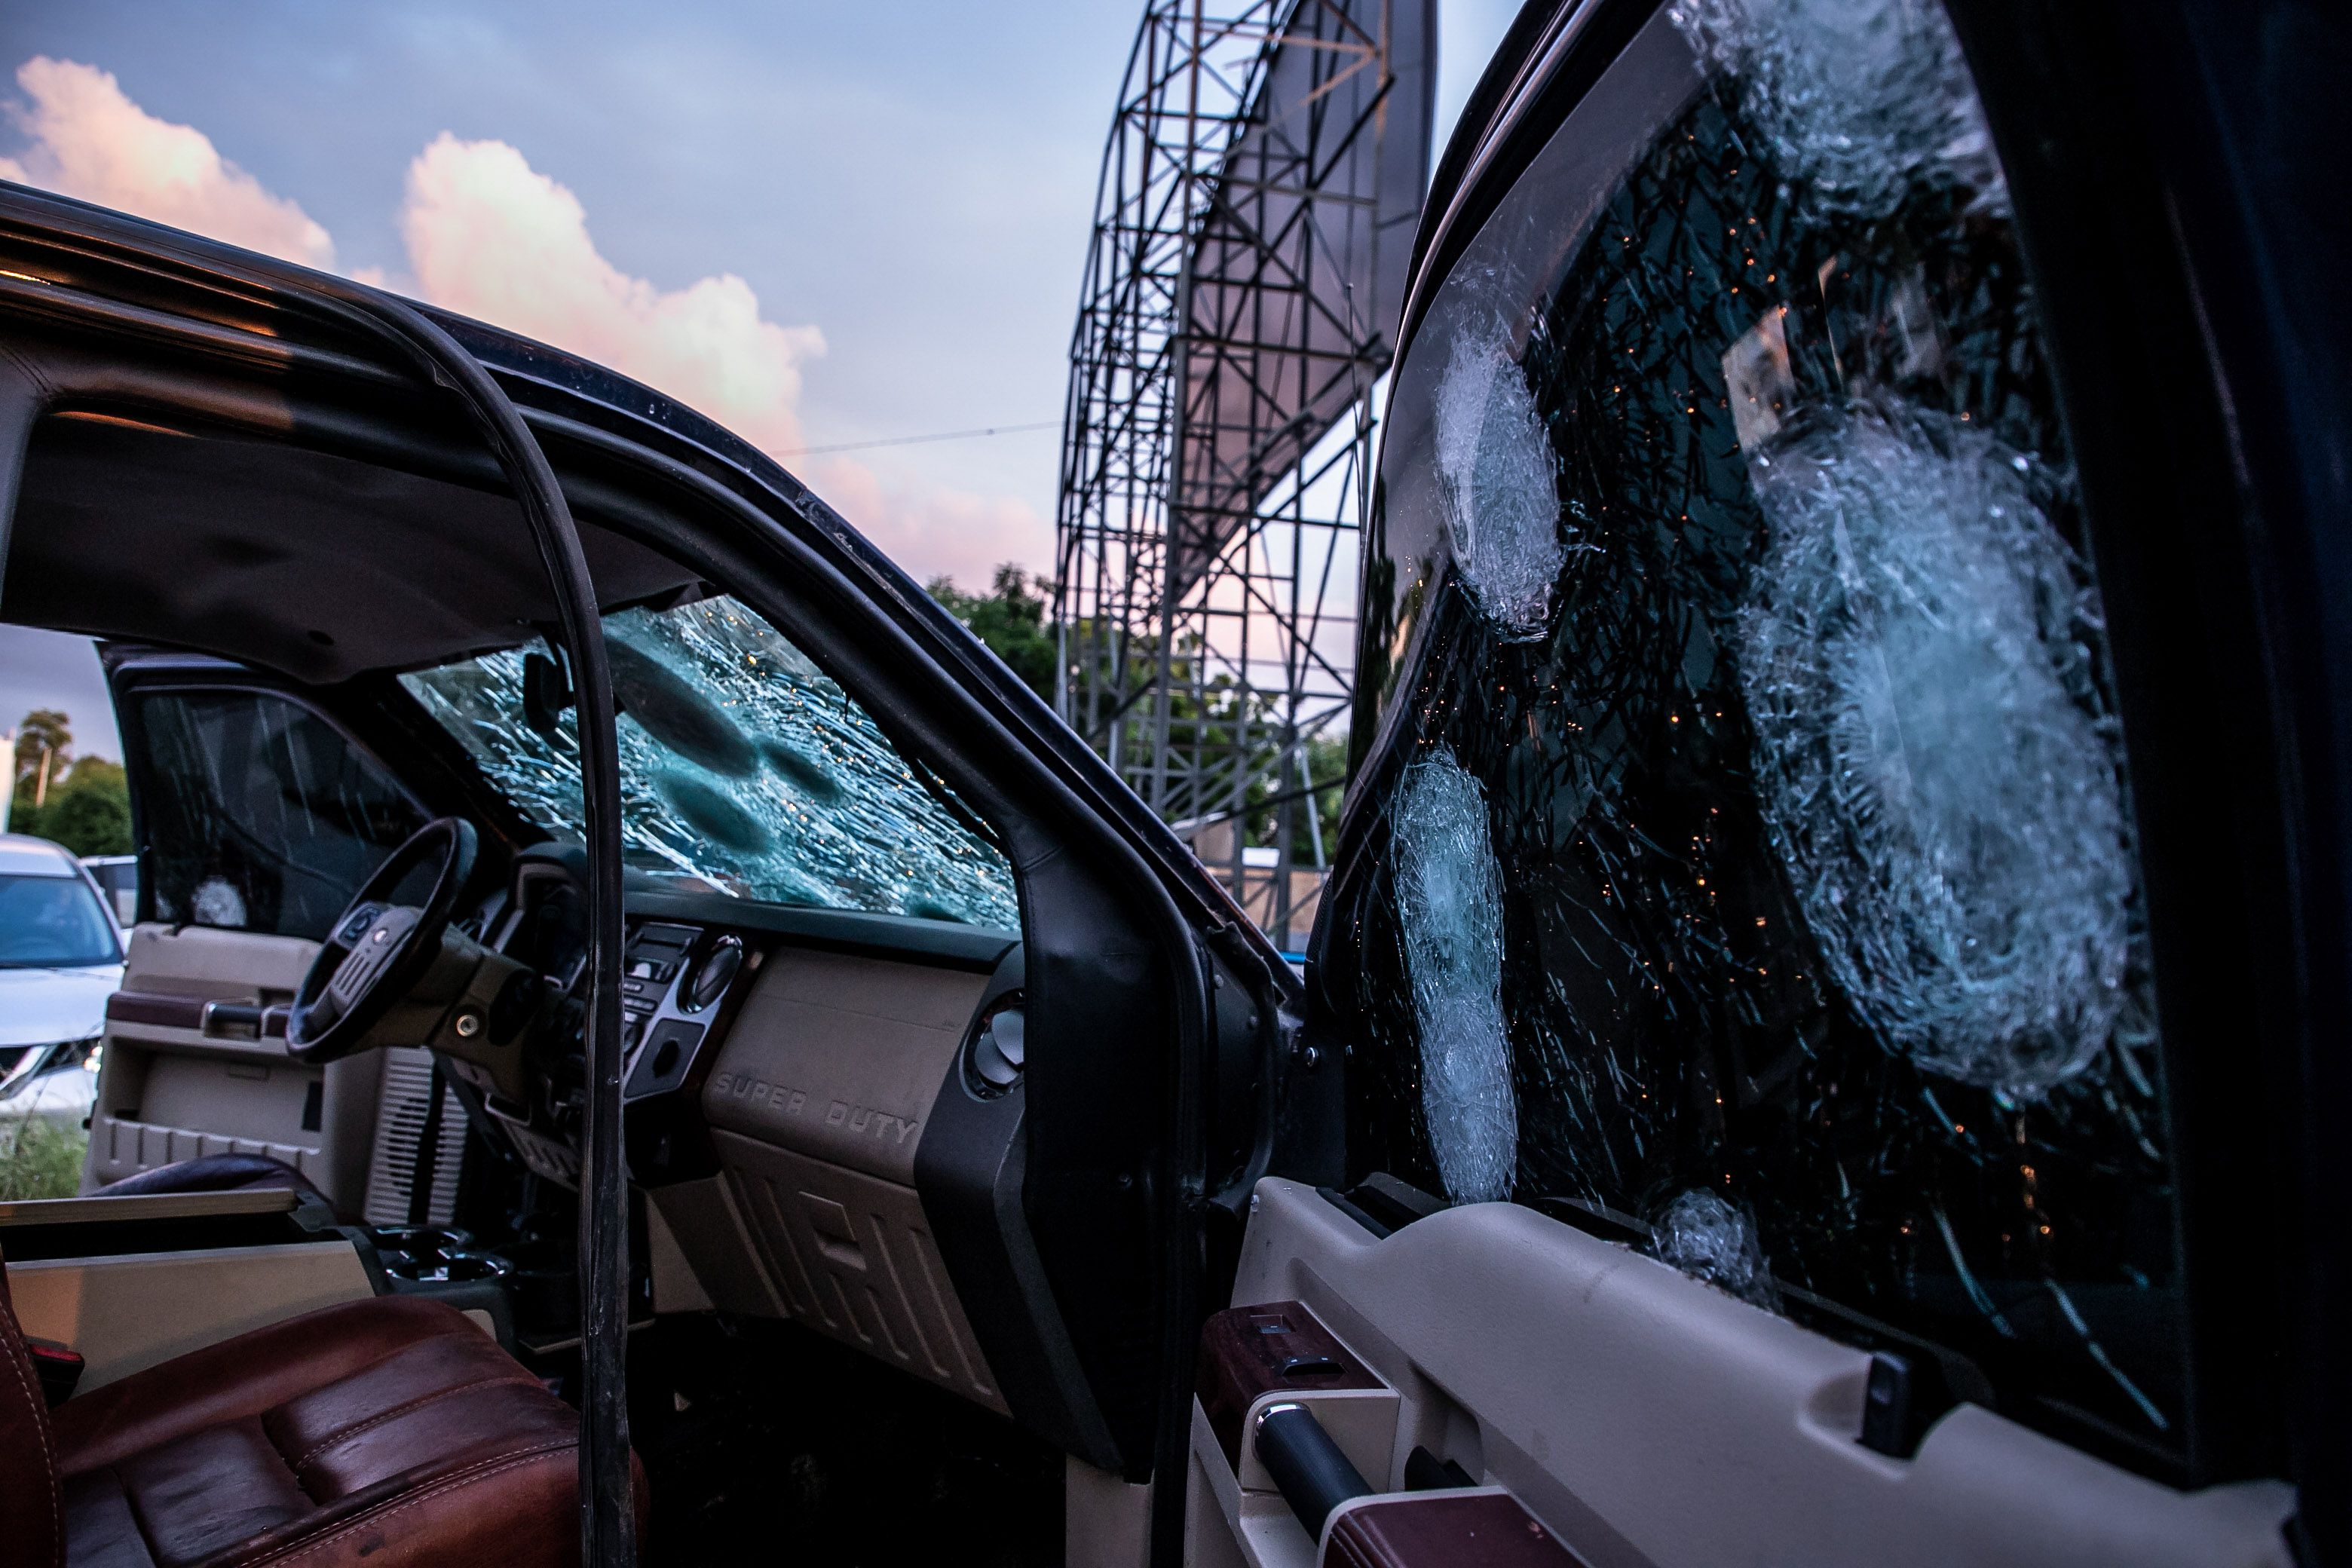 El operativo fallido contra Ovidio Guzmán reveló un caos en coordinación de cuerpos de seguridad (Foto: CUARTOSCURO.COM)